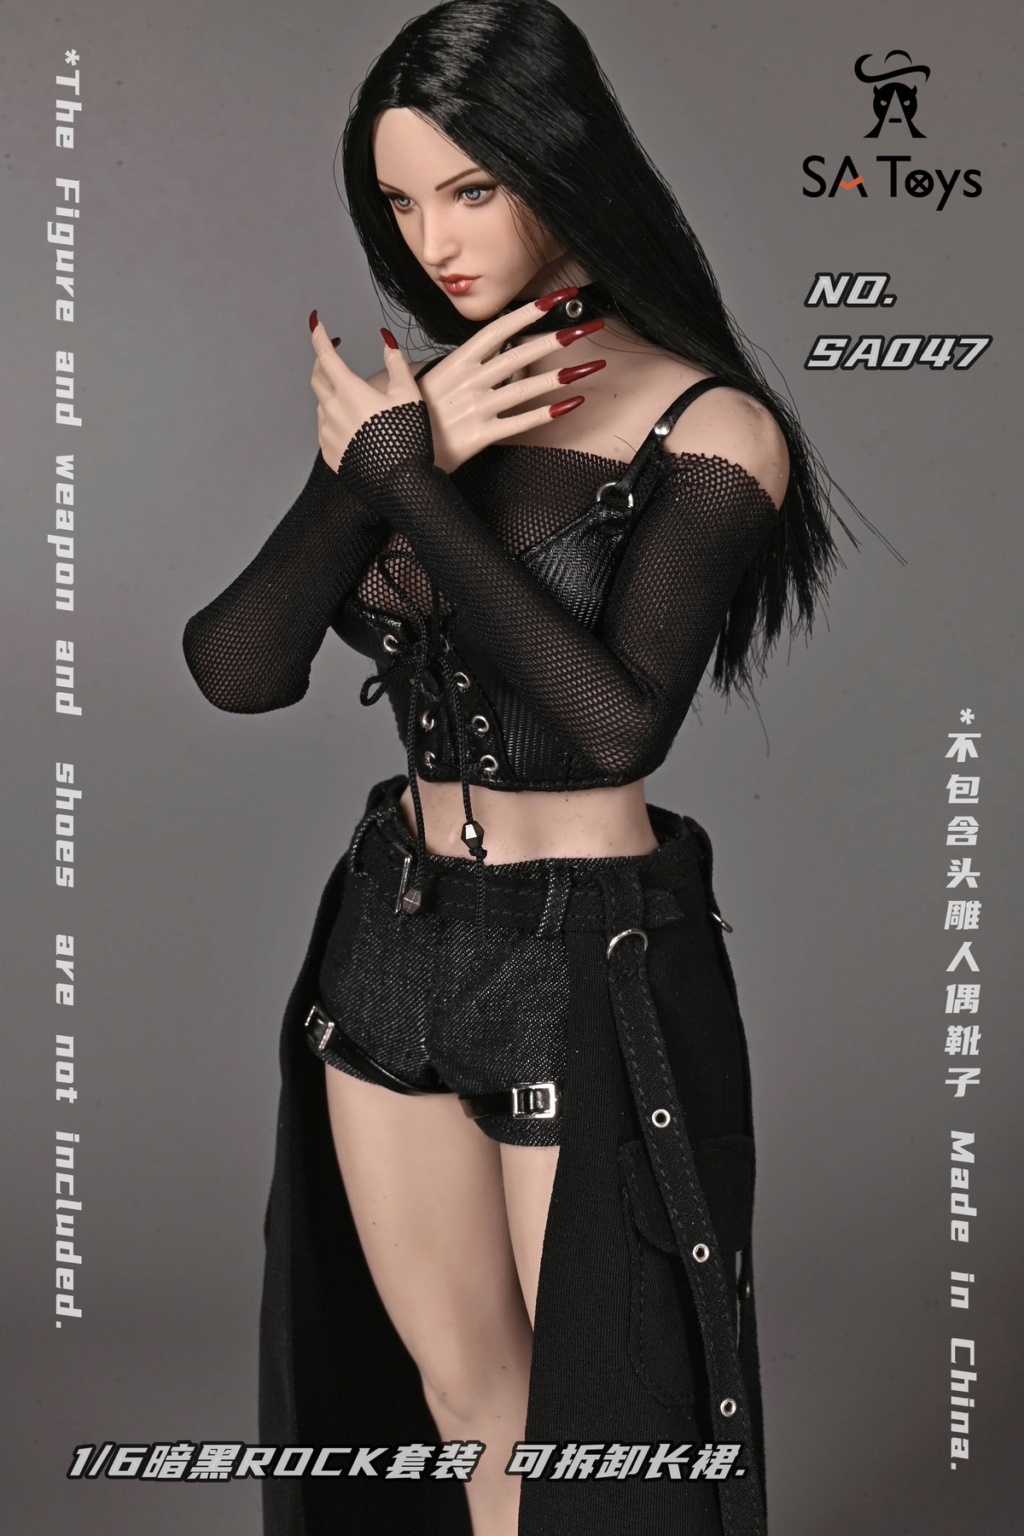 female - NEW PRODUCT: SA Toys: 1/6 Dark ROCK Suit/Heavy Duty Rivet Locomotive Dress/Secret Agent Combat Suit (NSFW?) 15051612